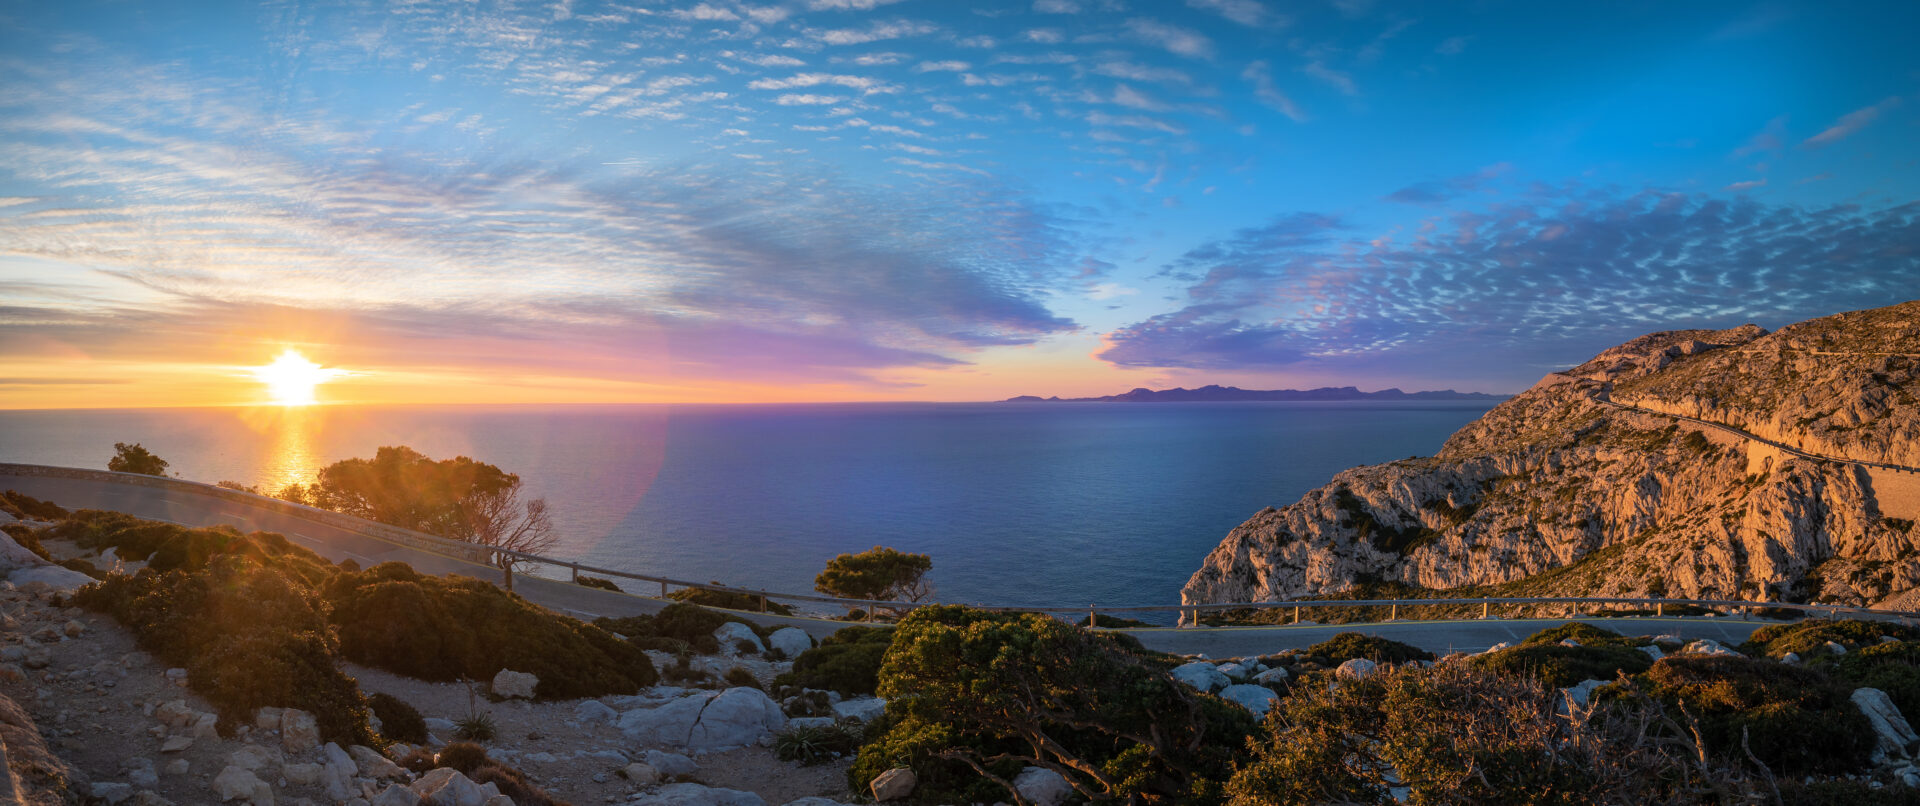 Sonnenuntergang am Cap de Formentor